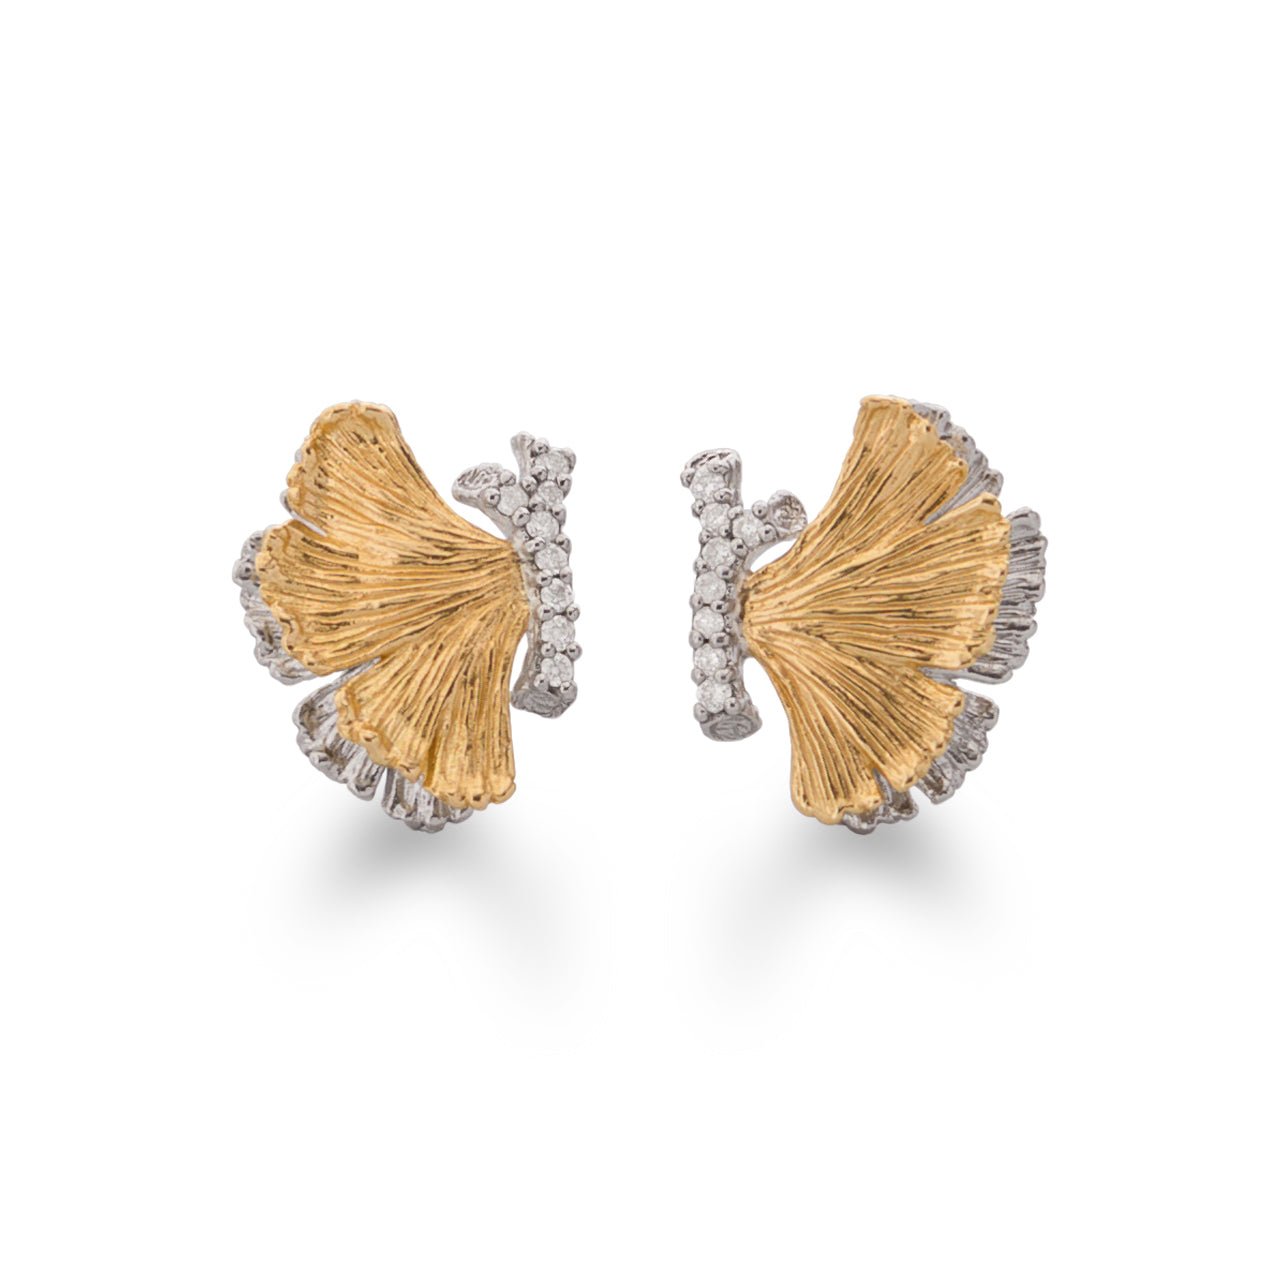 Michael Aram Butterfly Ginkgo 14mm Earrings with Diamonds